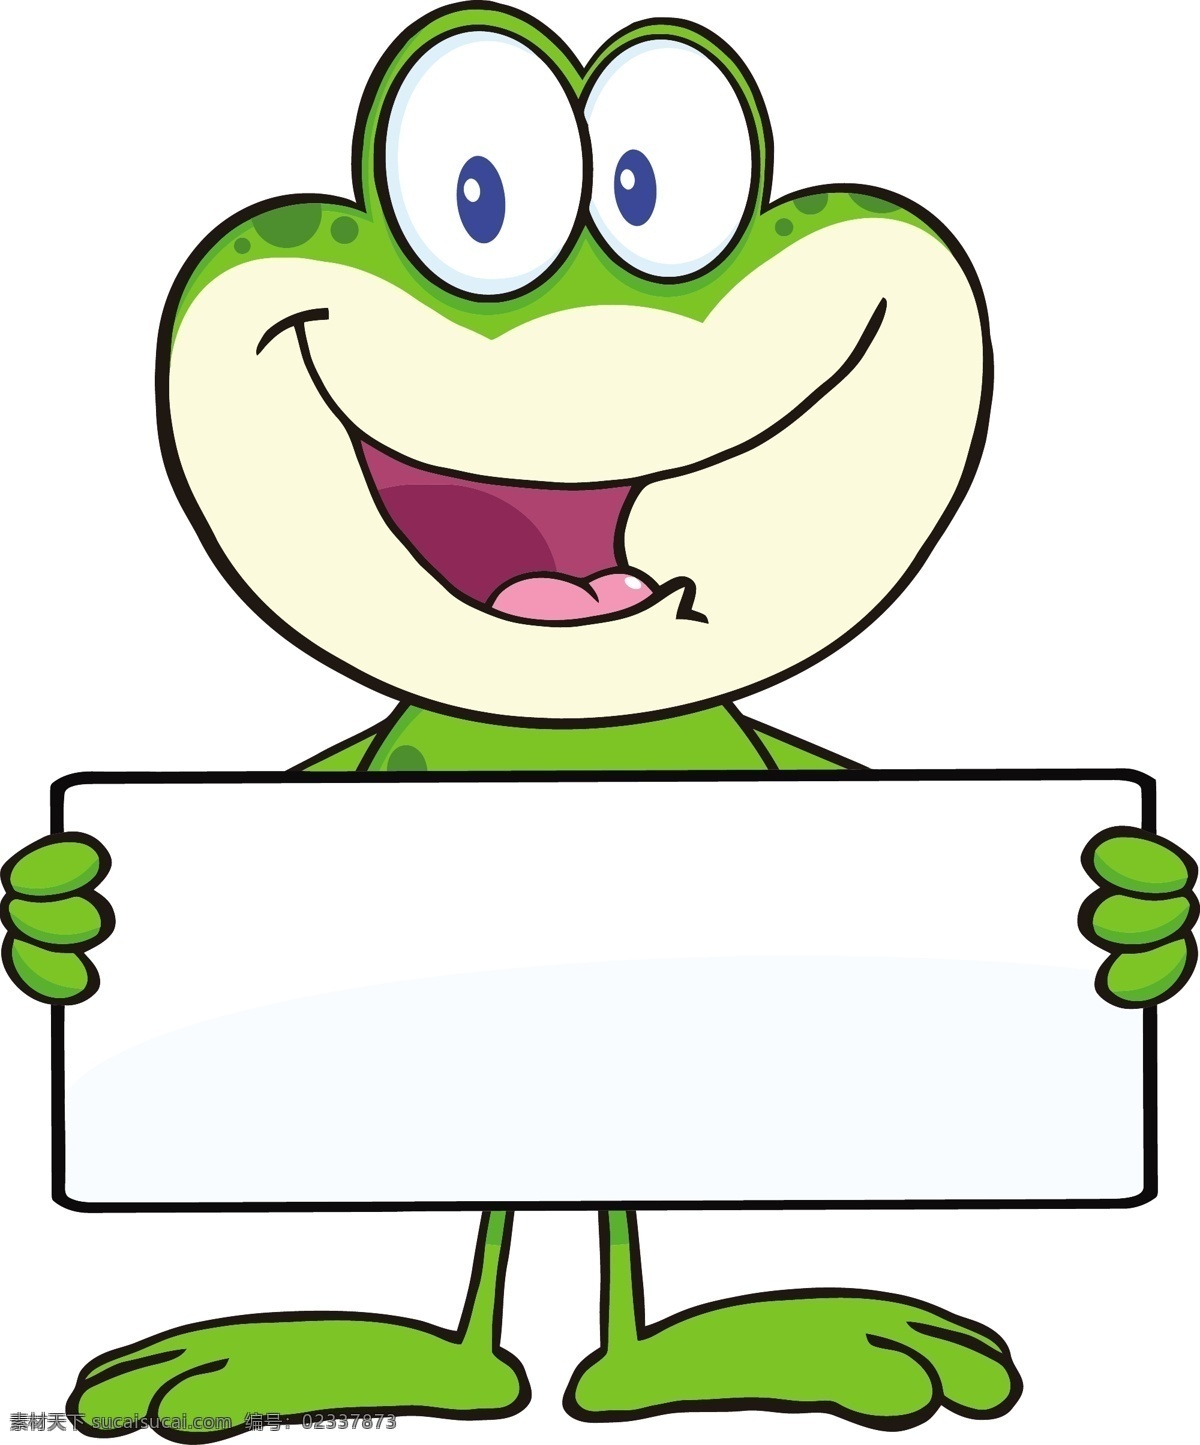 青蛙 动物 logo 手绘 广告牌 卡通青蛙 矢量 野生动物 生物世界